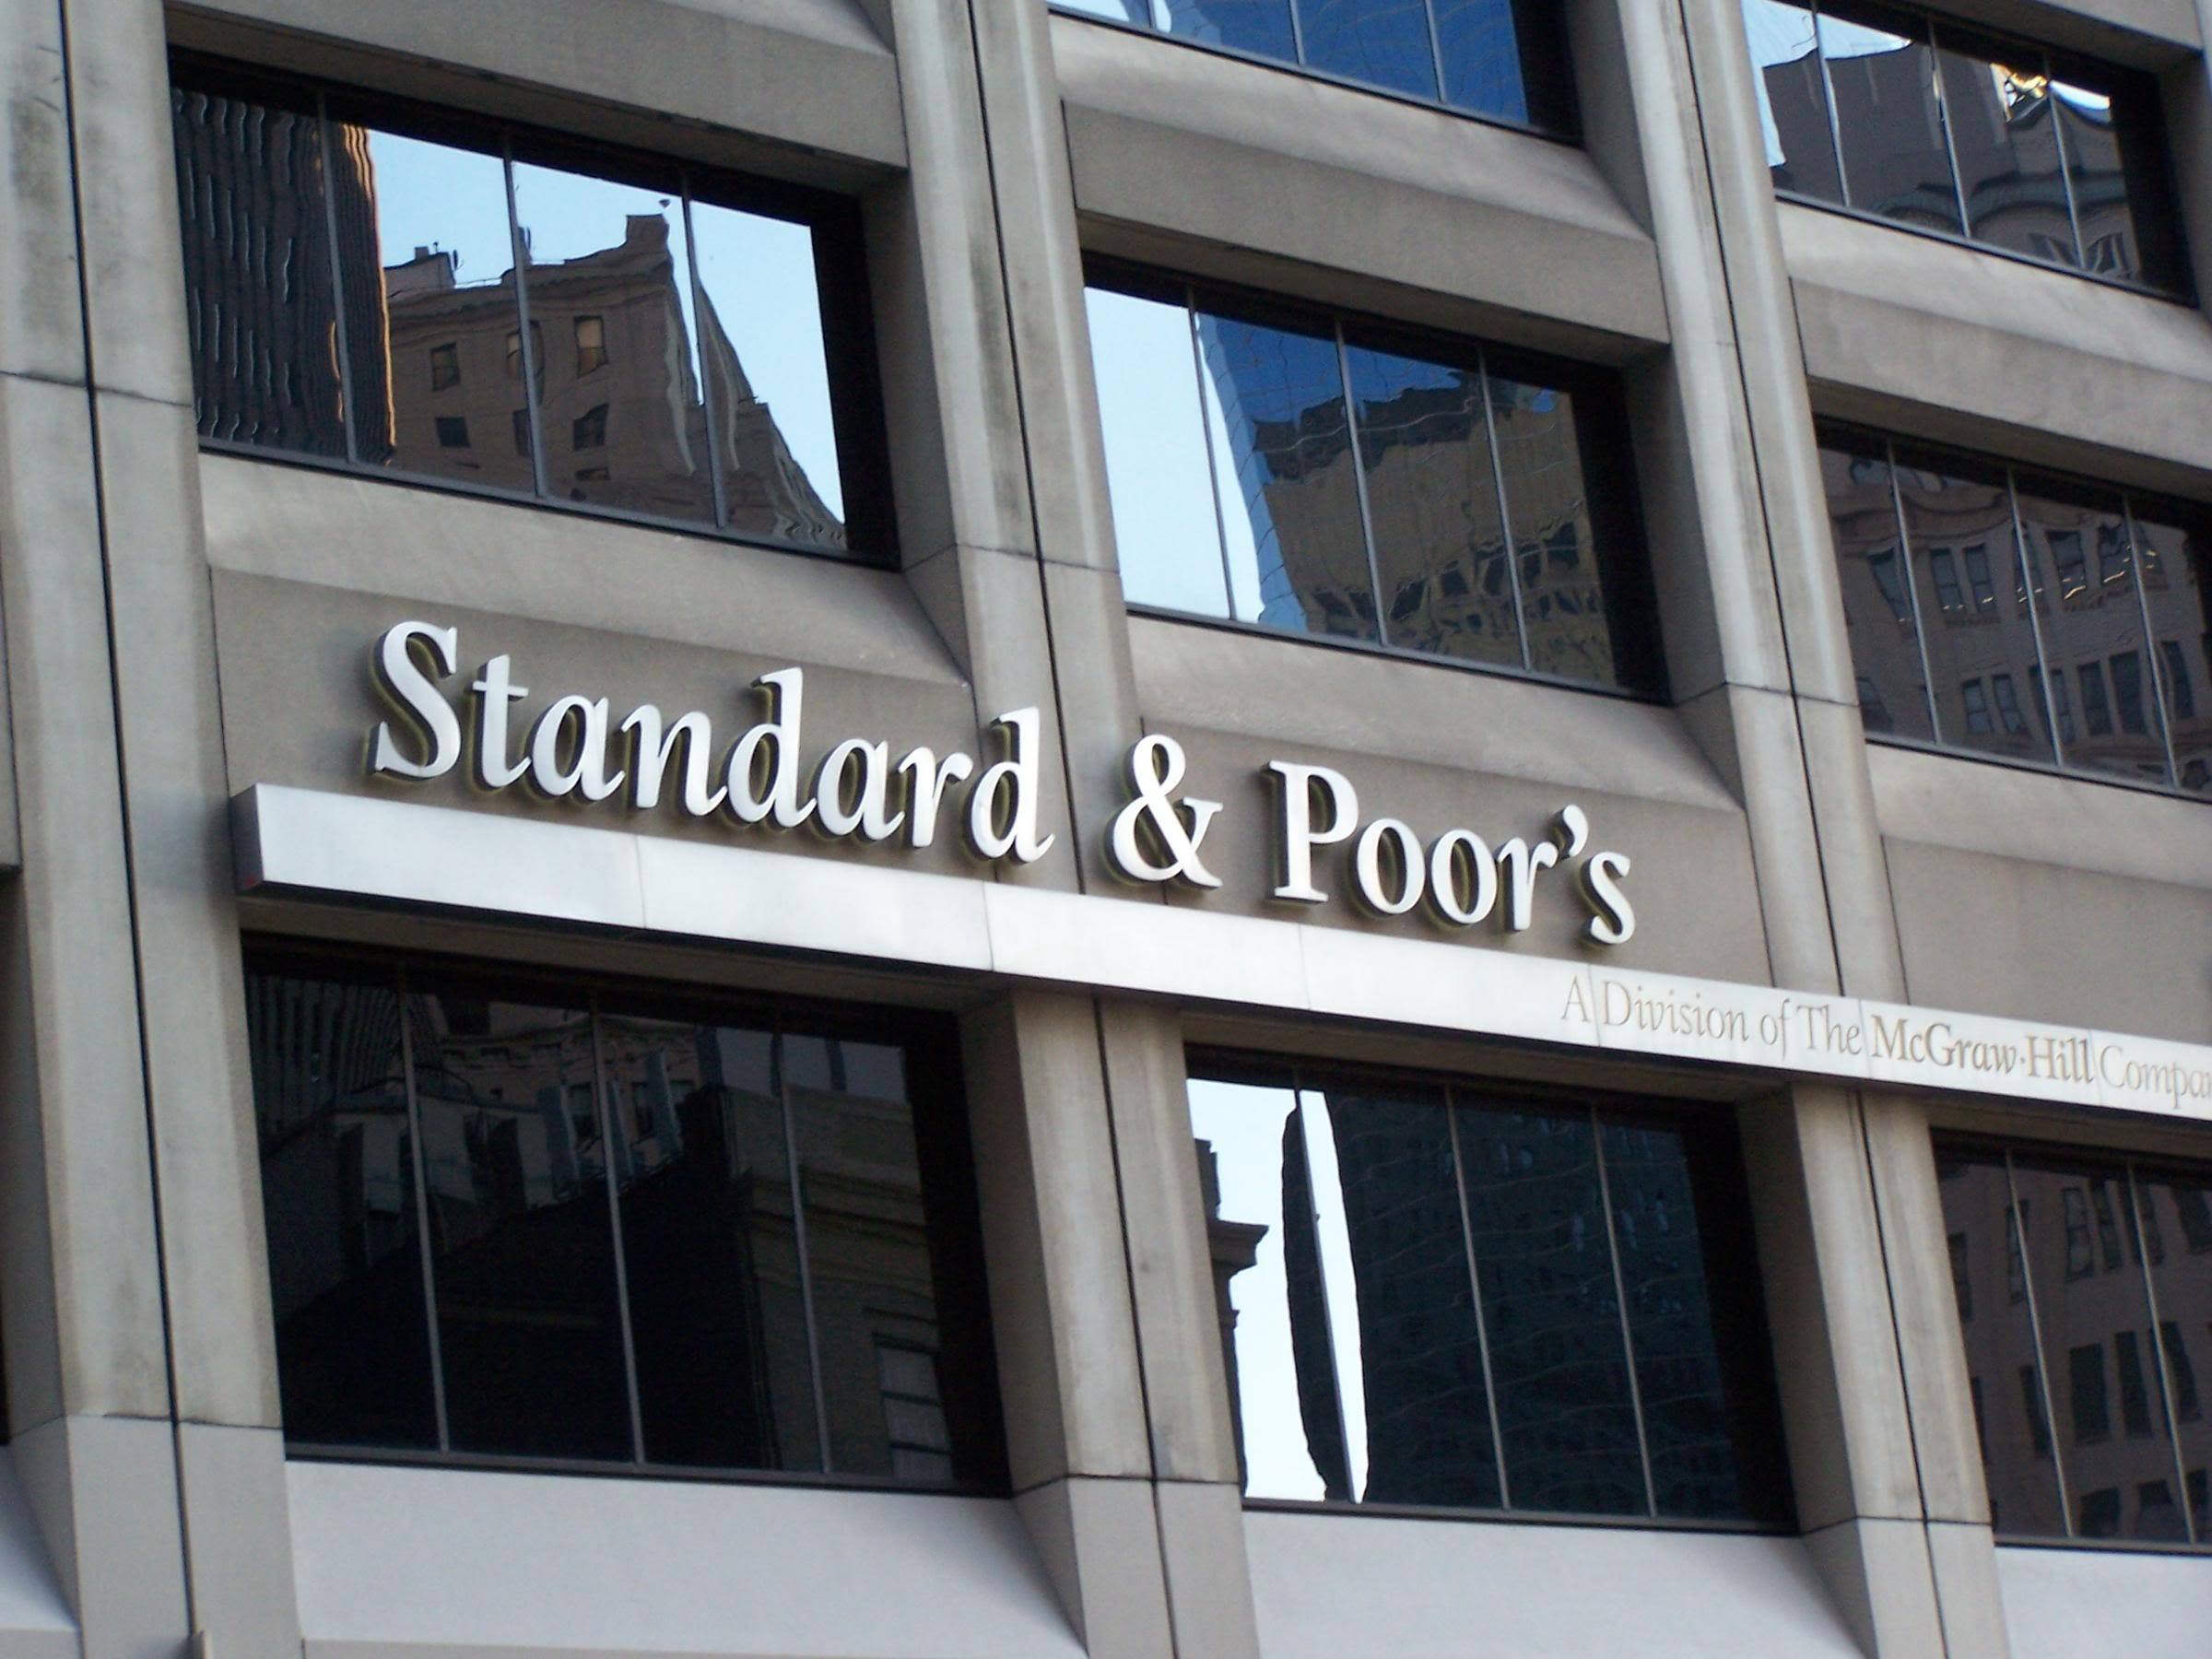 Agenţia americană S & P a păstrat ratingul României. Ministrul finanţelor: Este o confirmare a faptului că suntem pe drumul cel bun cu măsurile adoptate de guvern